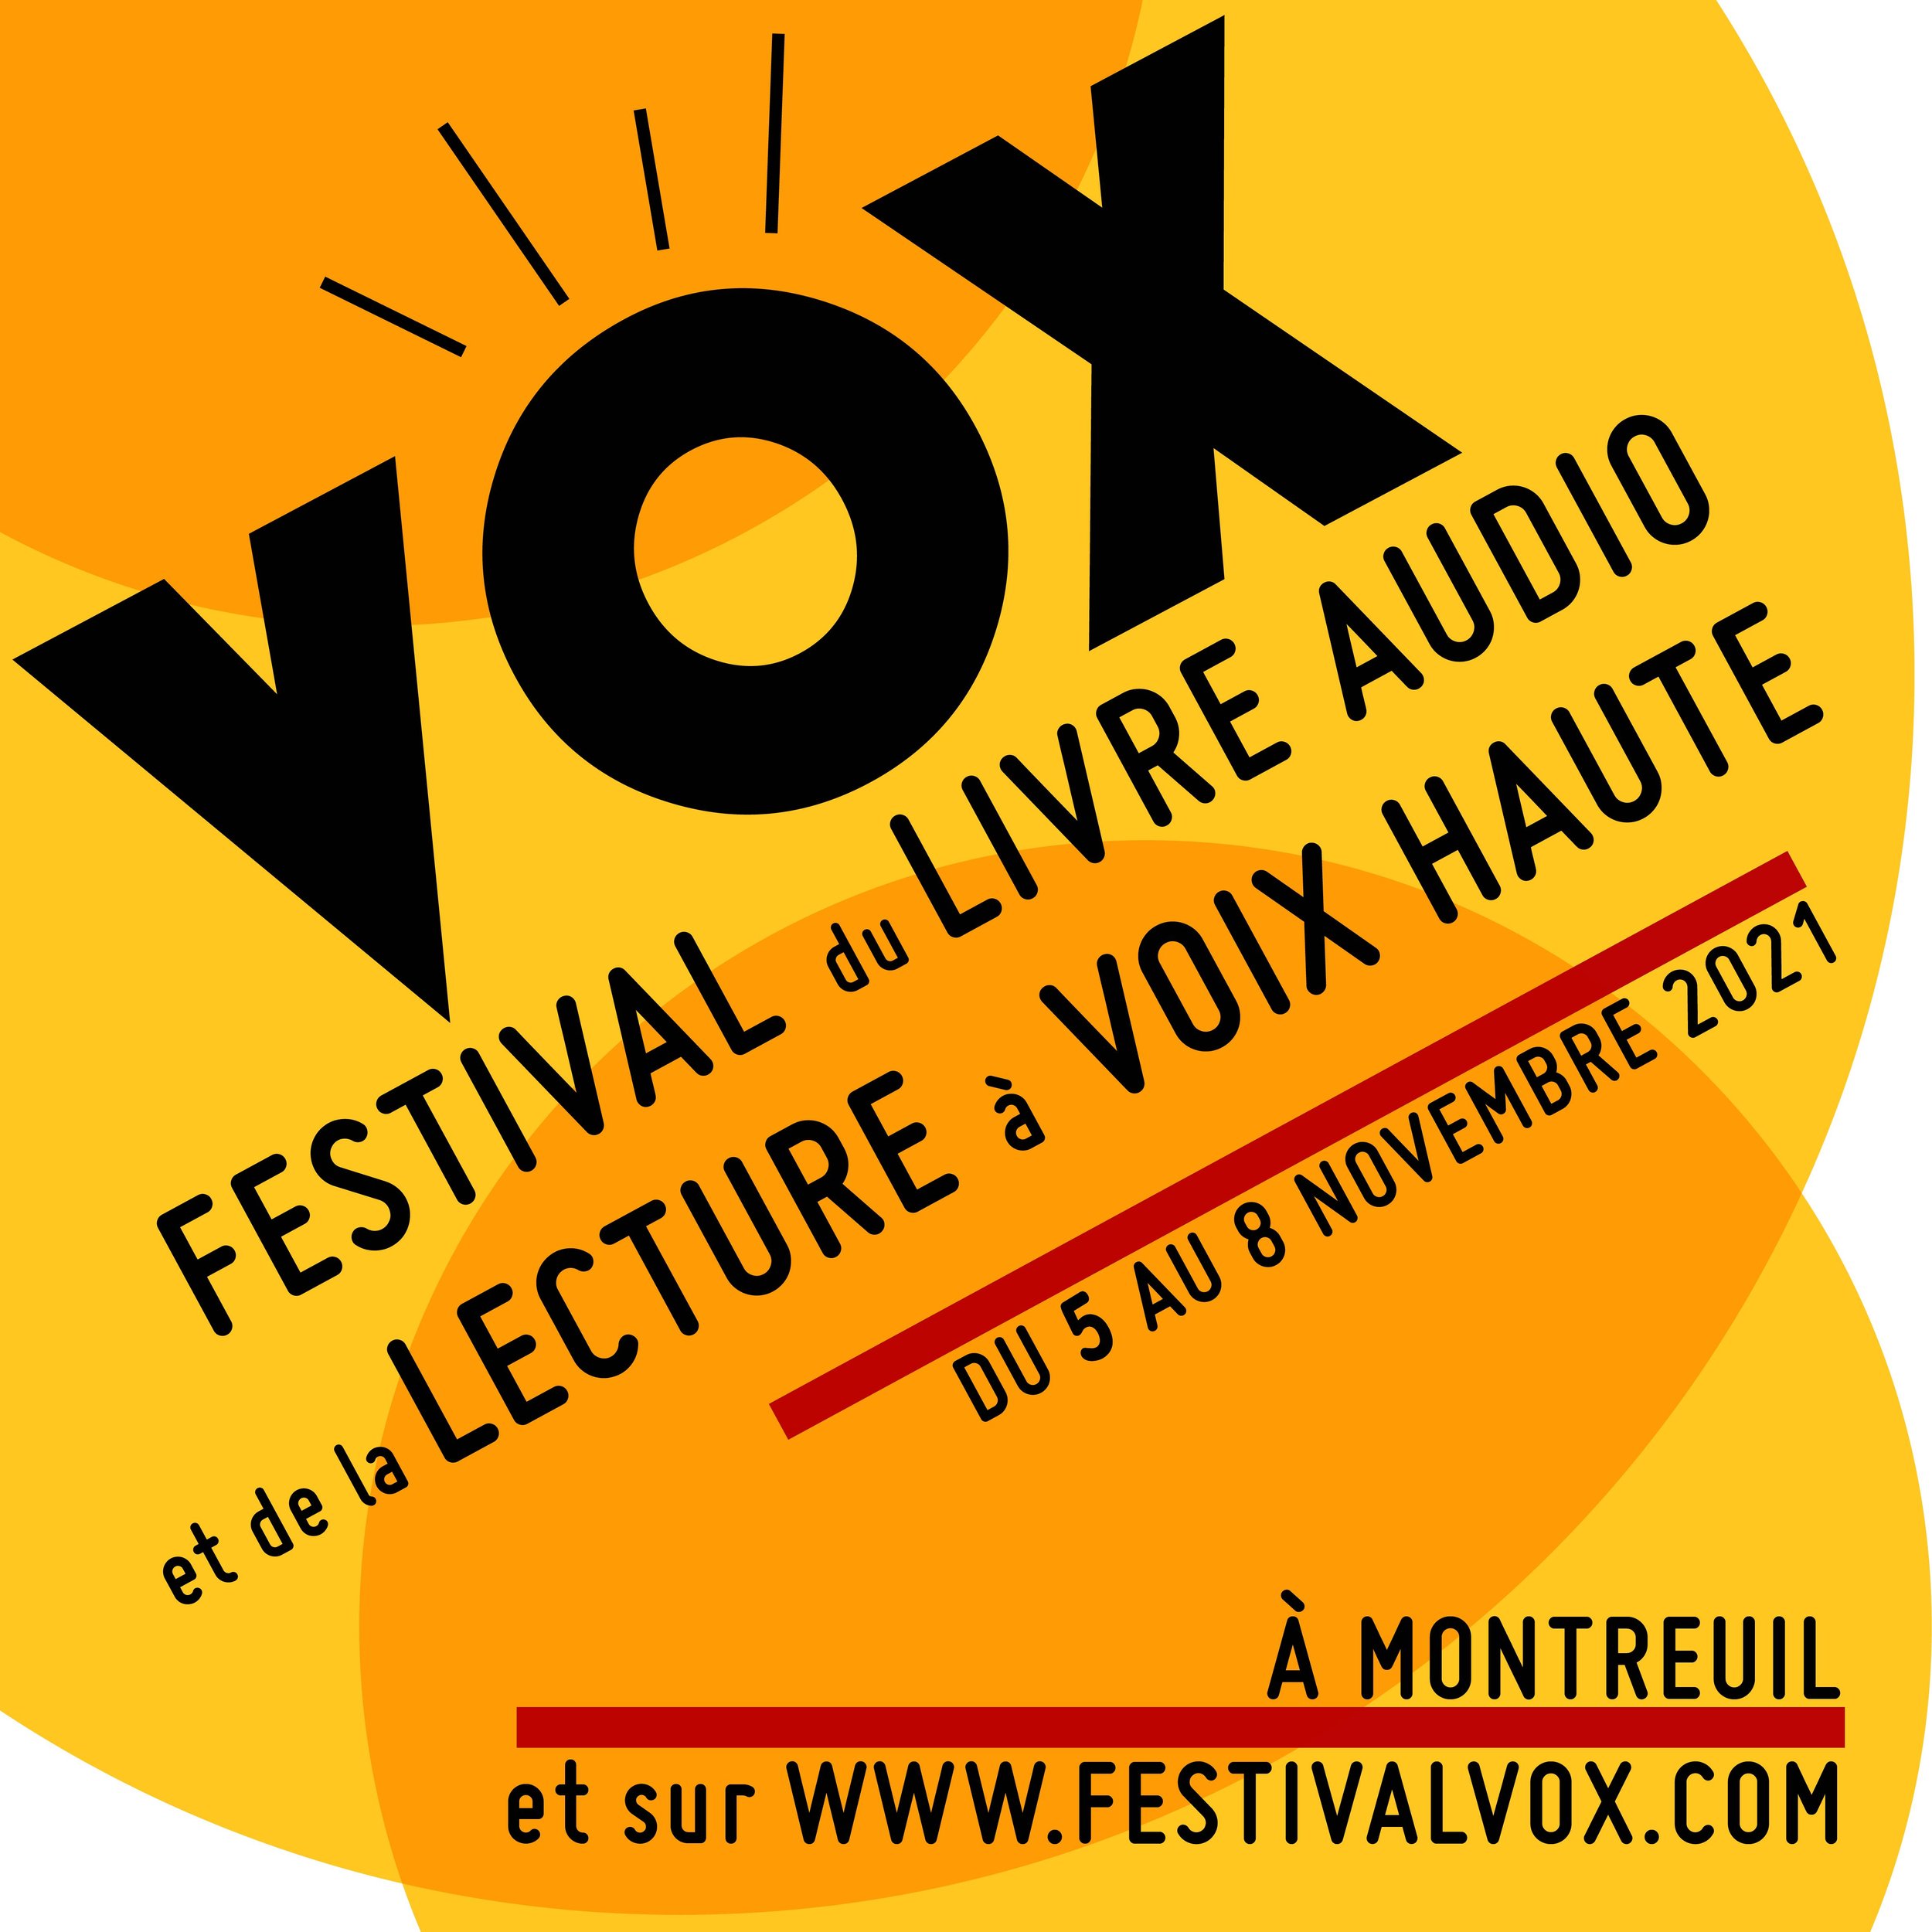 VOX - FESTIVAL DU LIVRE AUDIO ET DE LA LECTURE À VOIX HAUTE